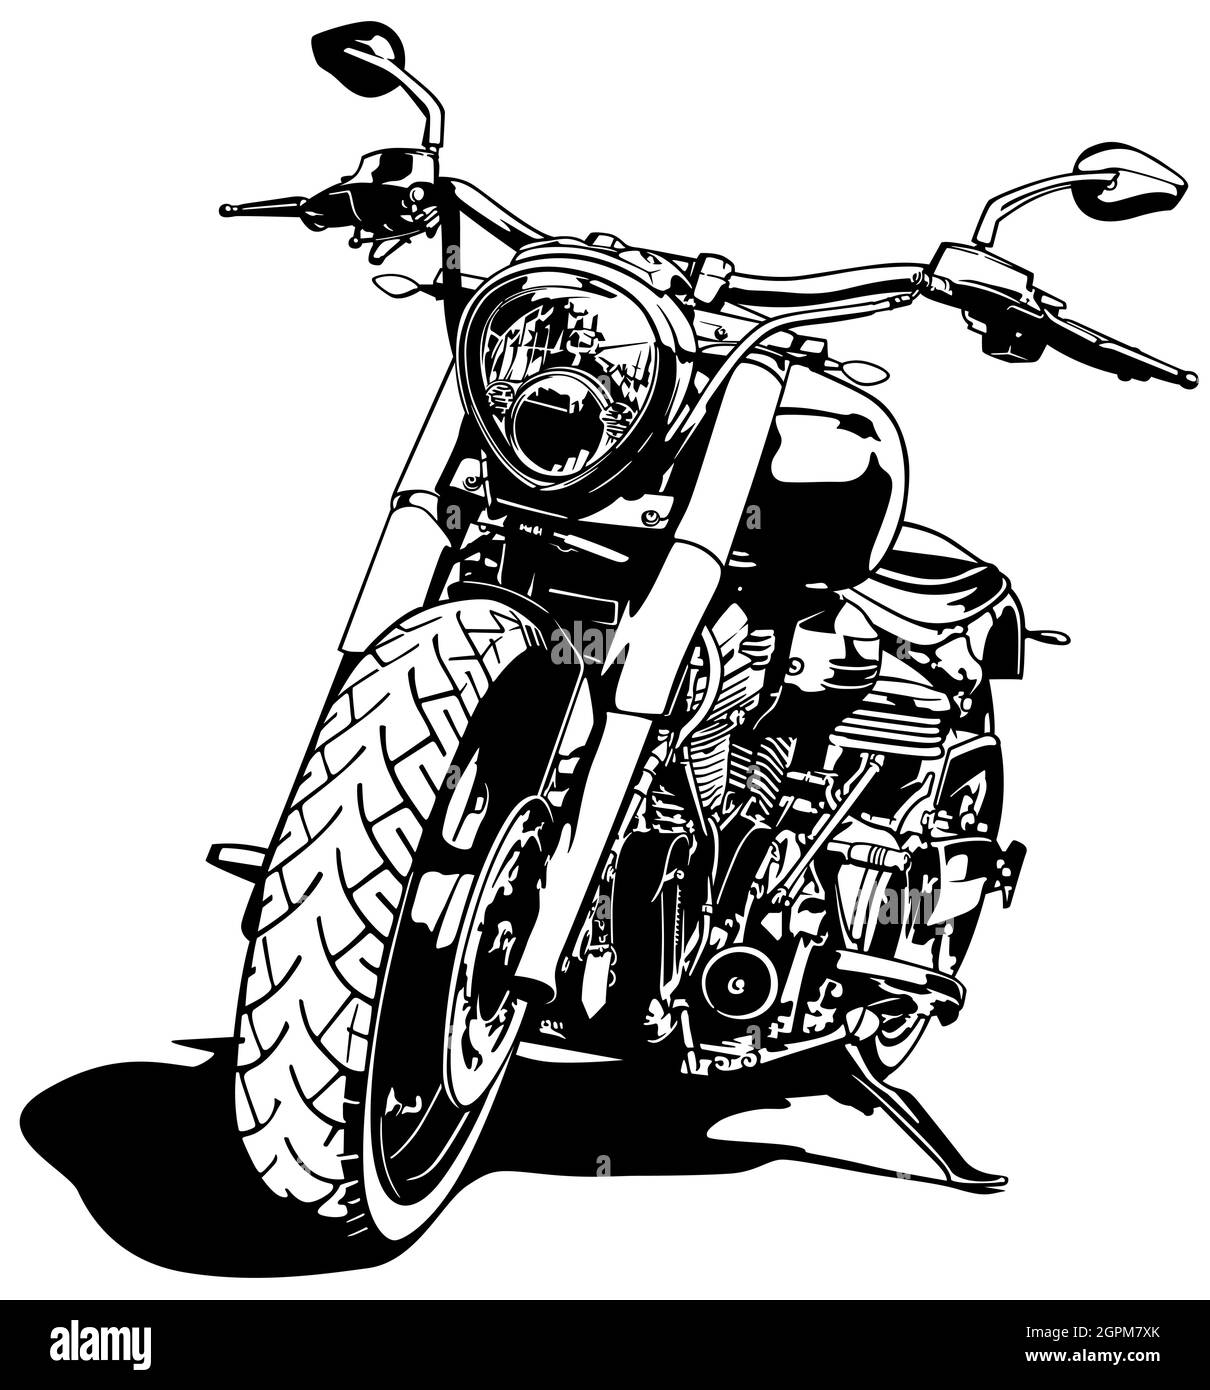 Dessin de moto noir et blanc Illustration de Vecteur